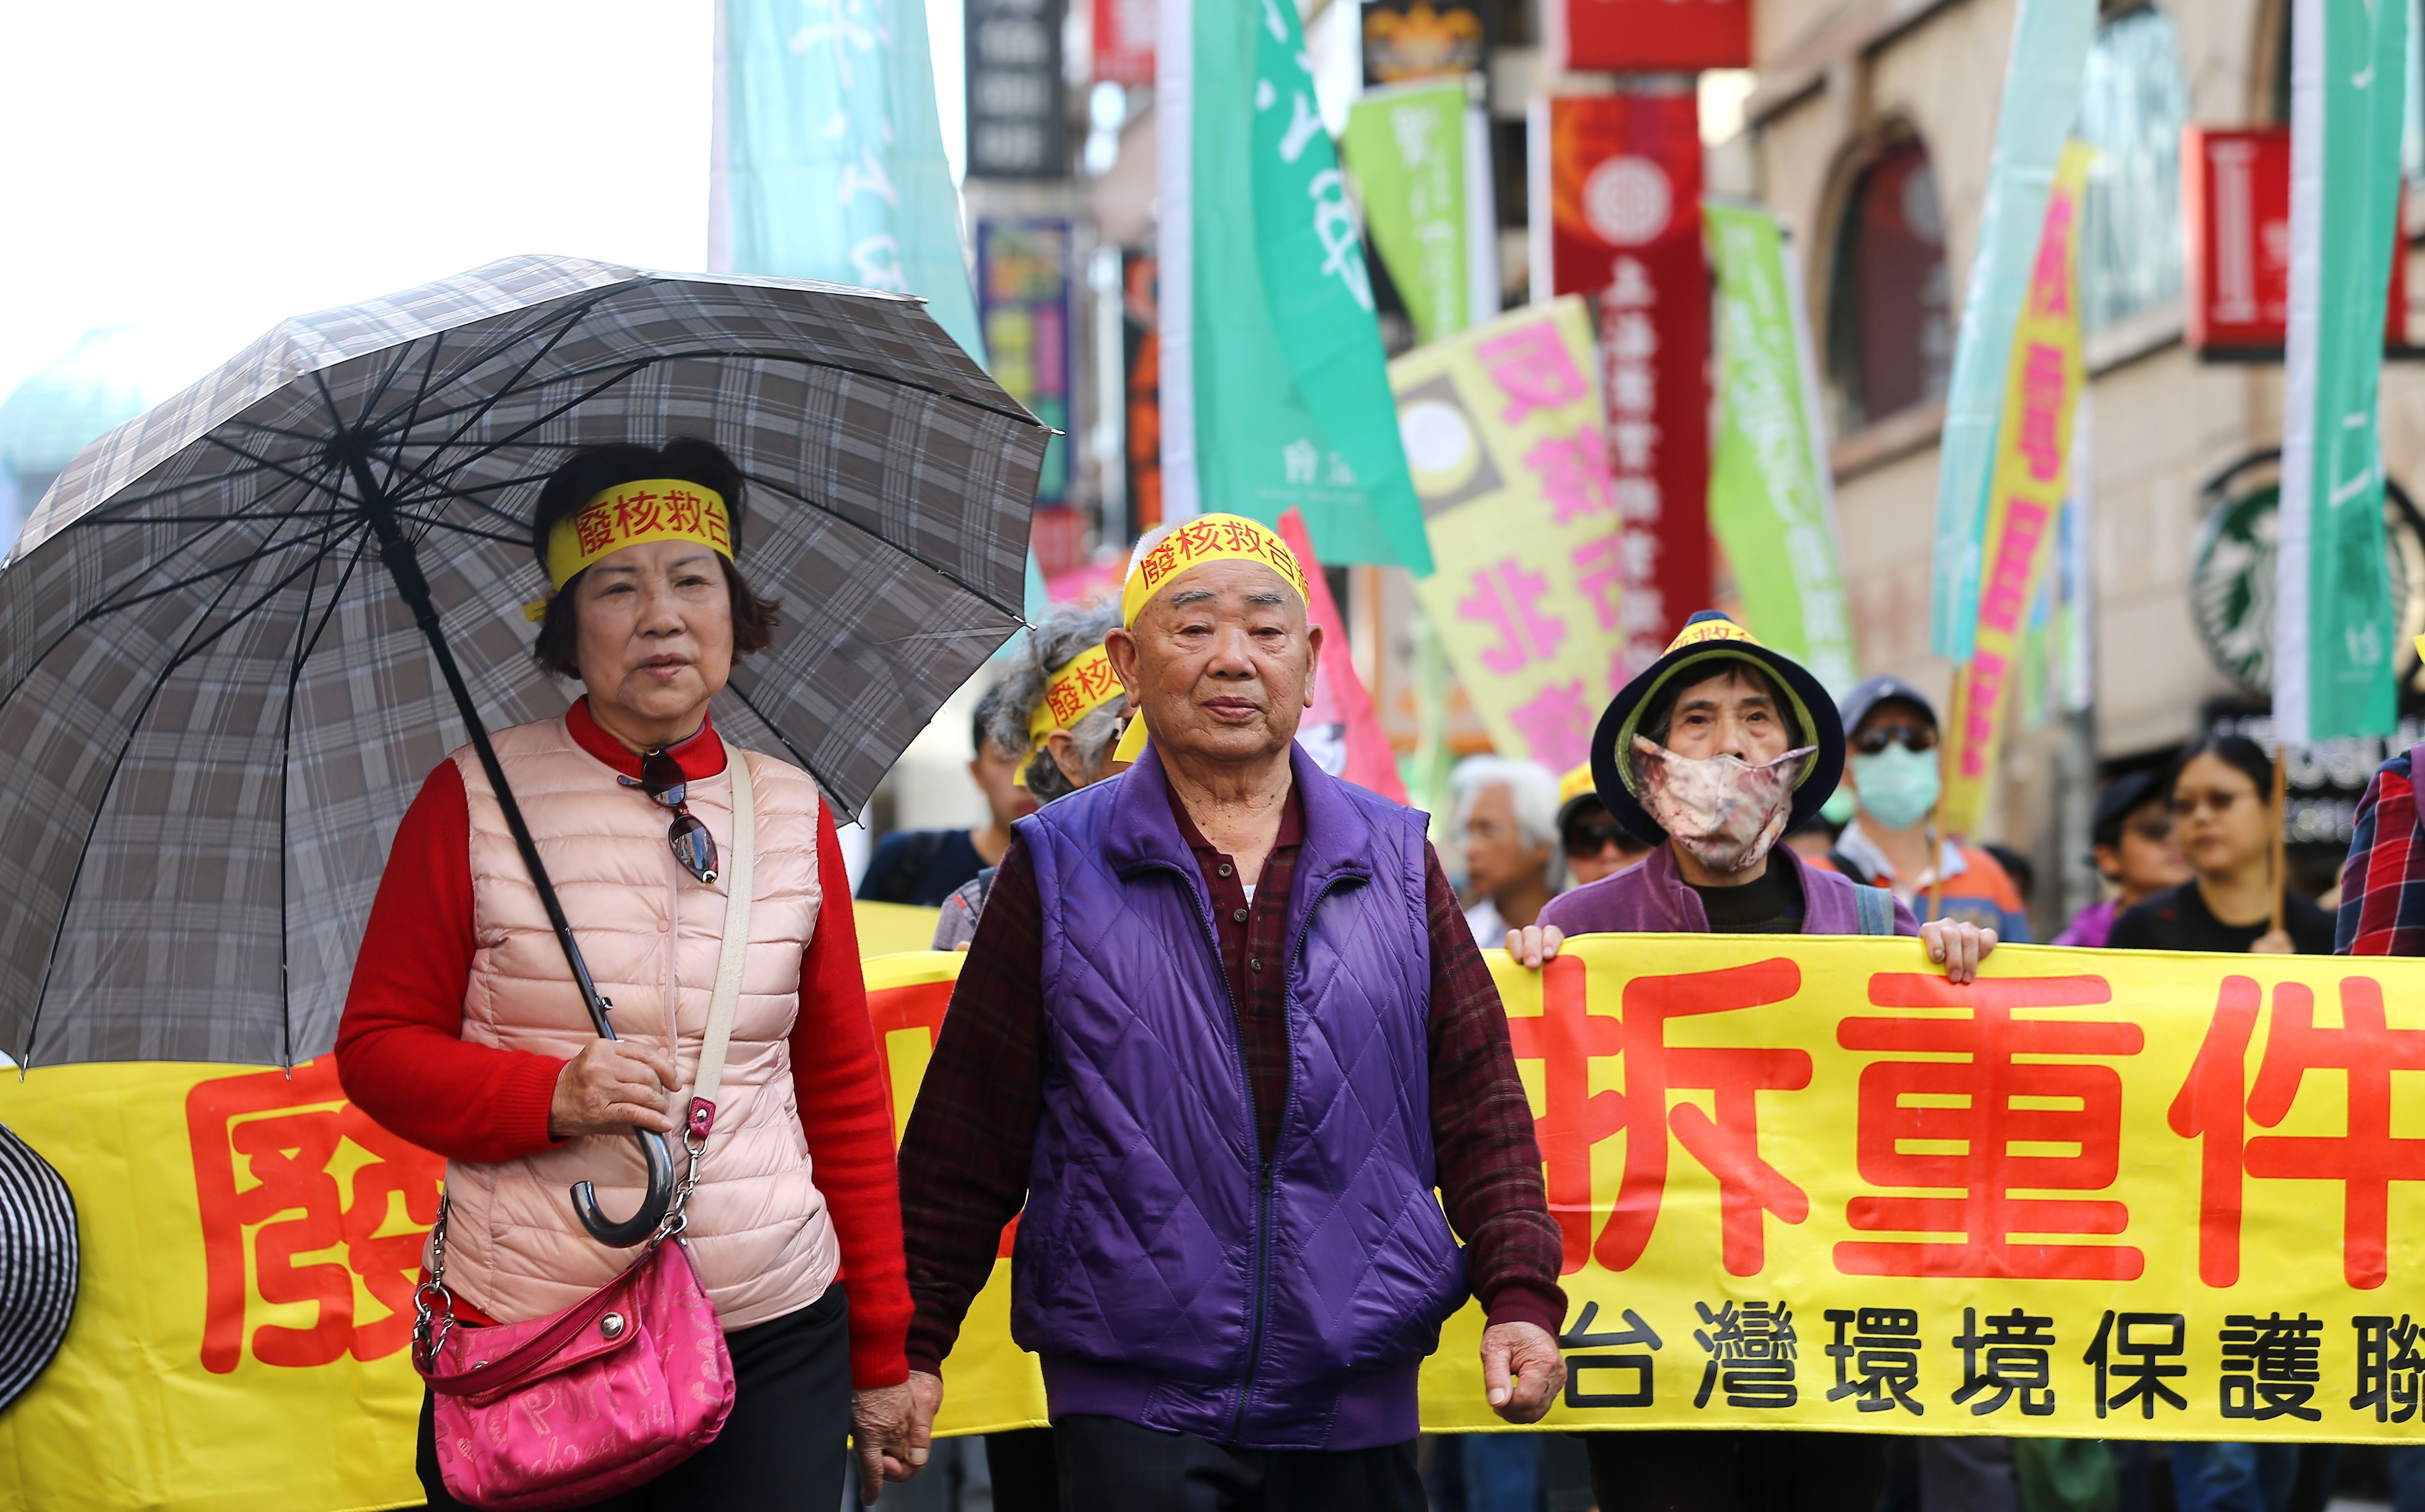 مظاهرات حاشدة فى تايوان احتجاجًا على استخدام الطاقة النووية